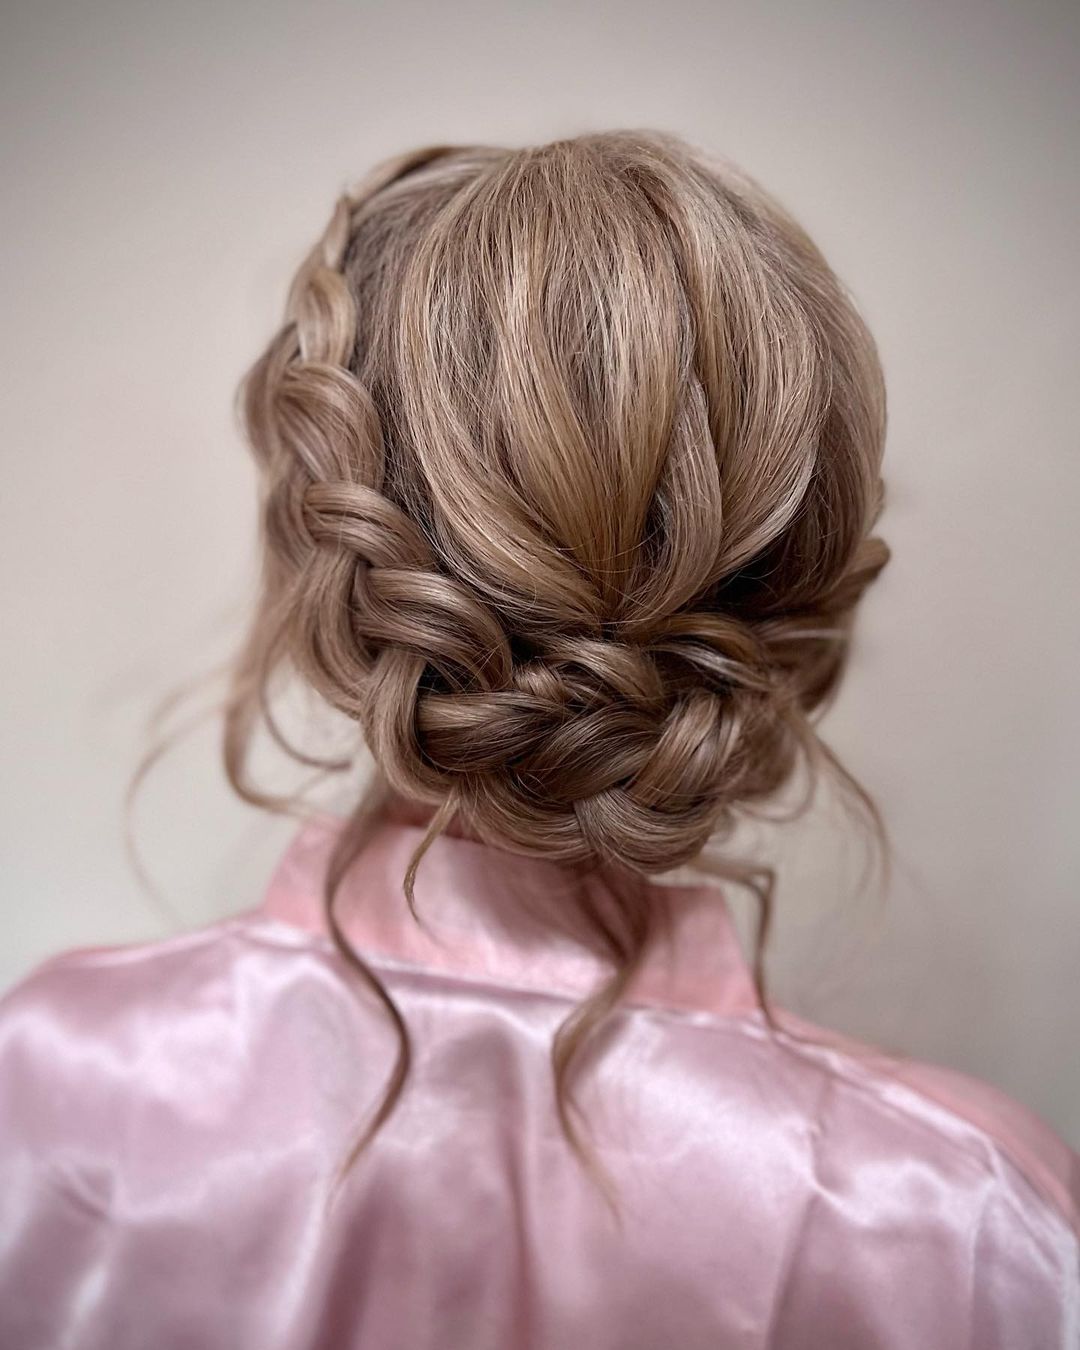 bohemian braided crown bridesmaid updo hairstyle via lisamariehair